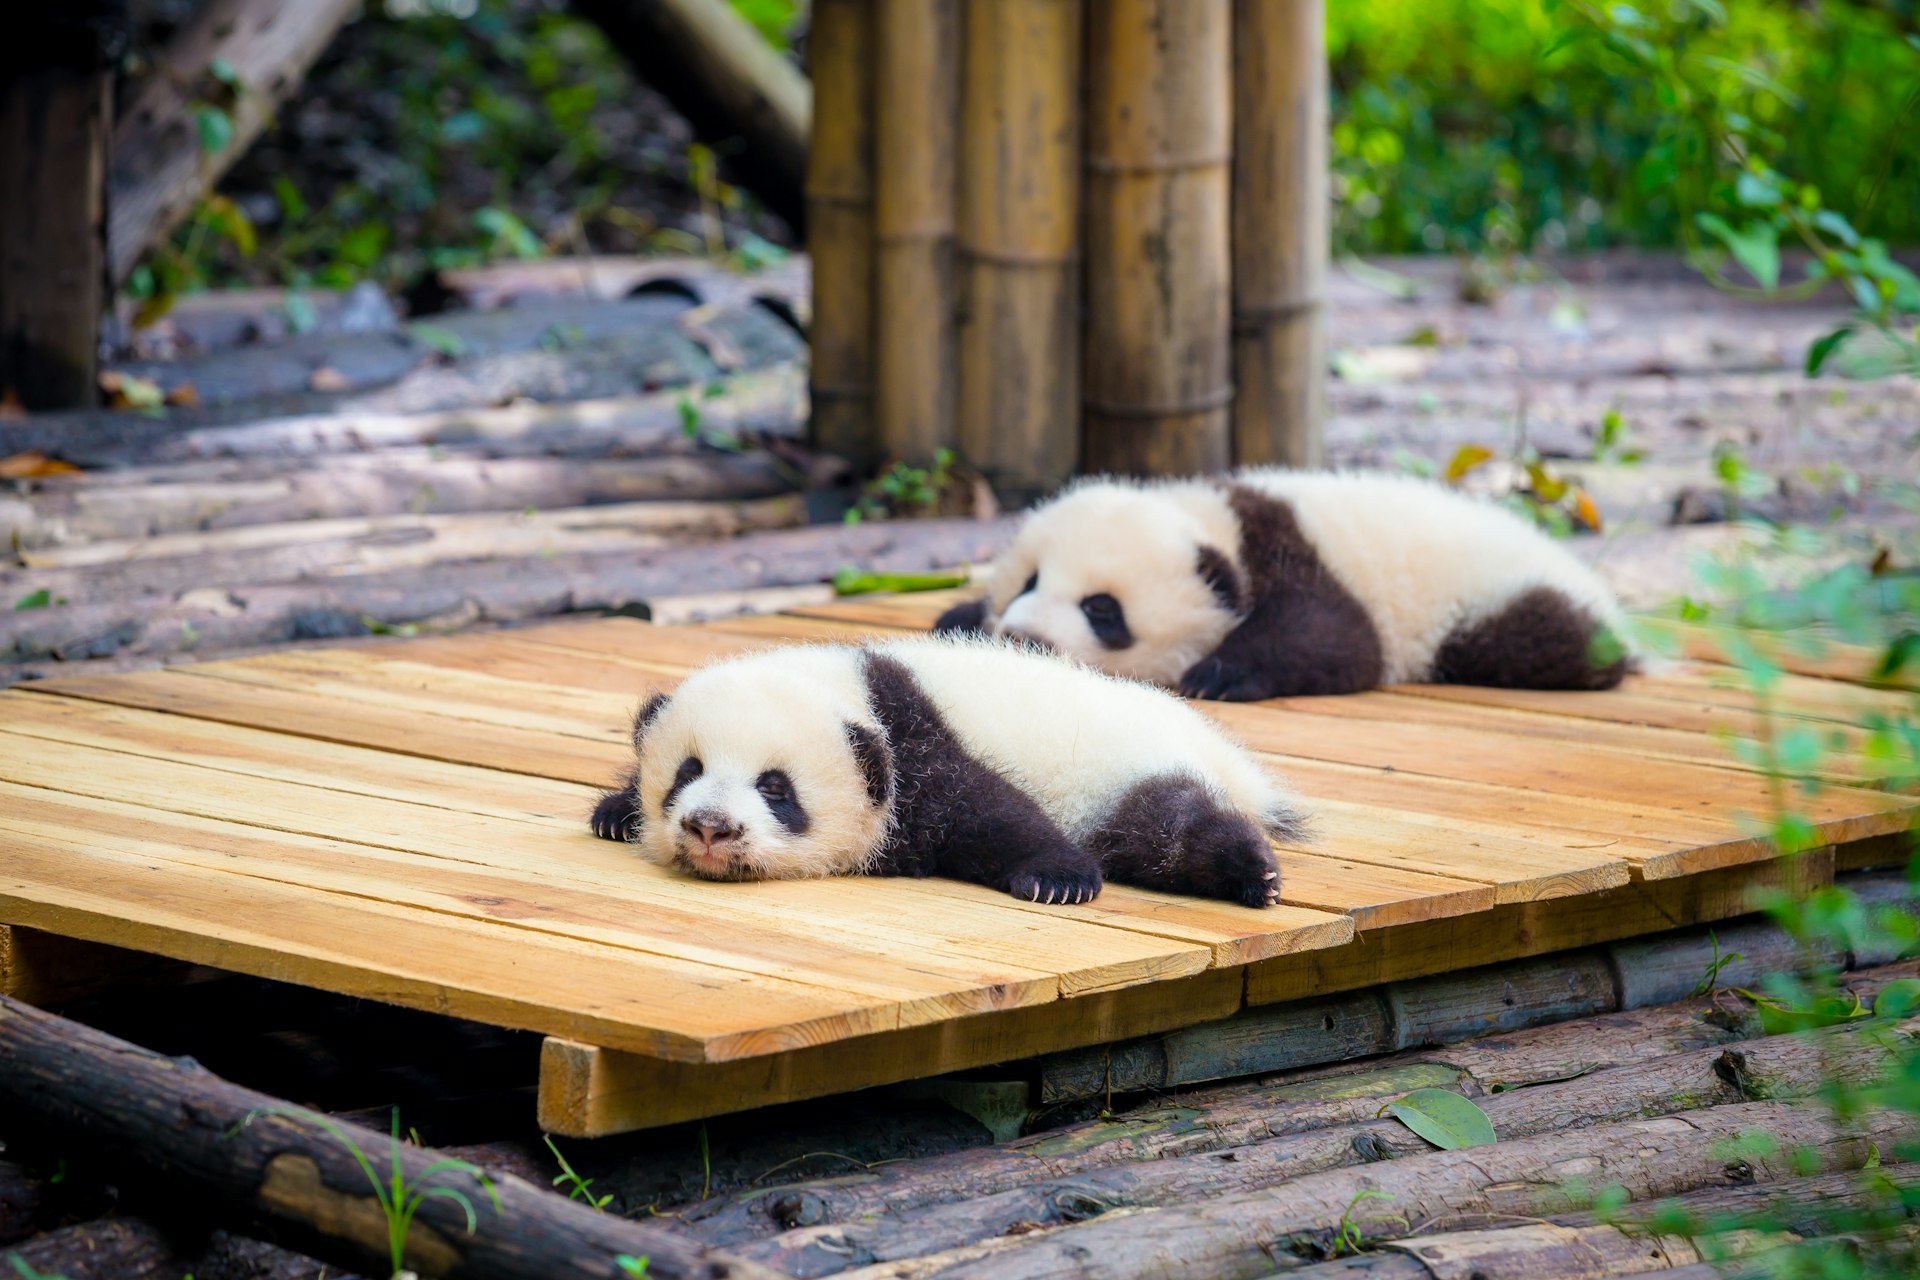 Two cute baby pandas, Chengdu, Sichuan, China